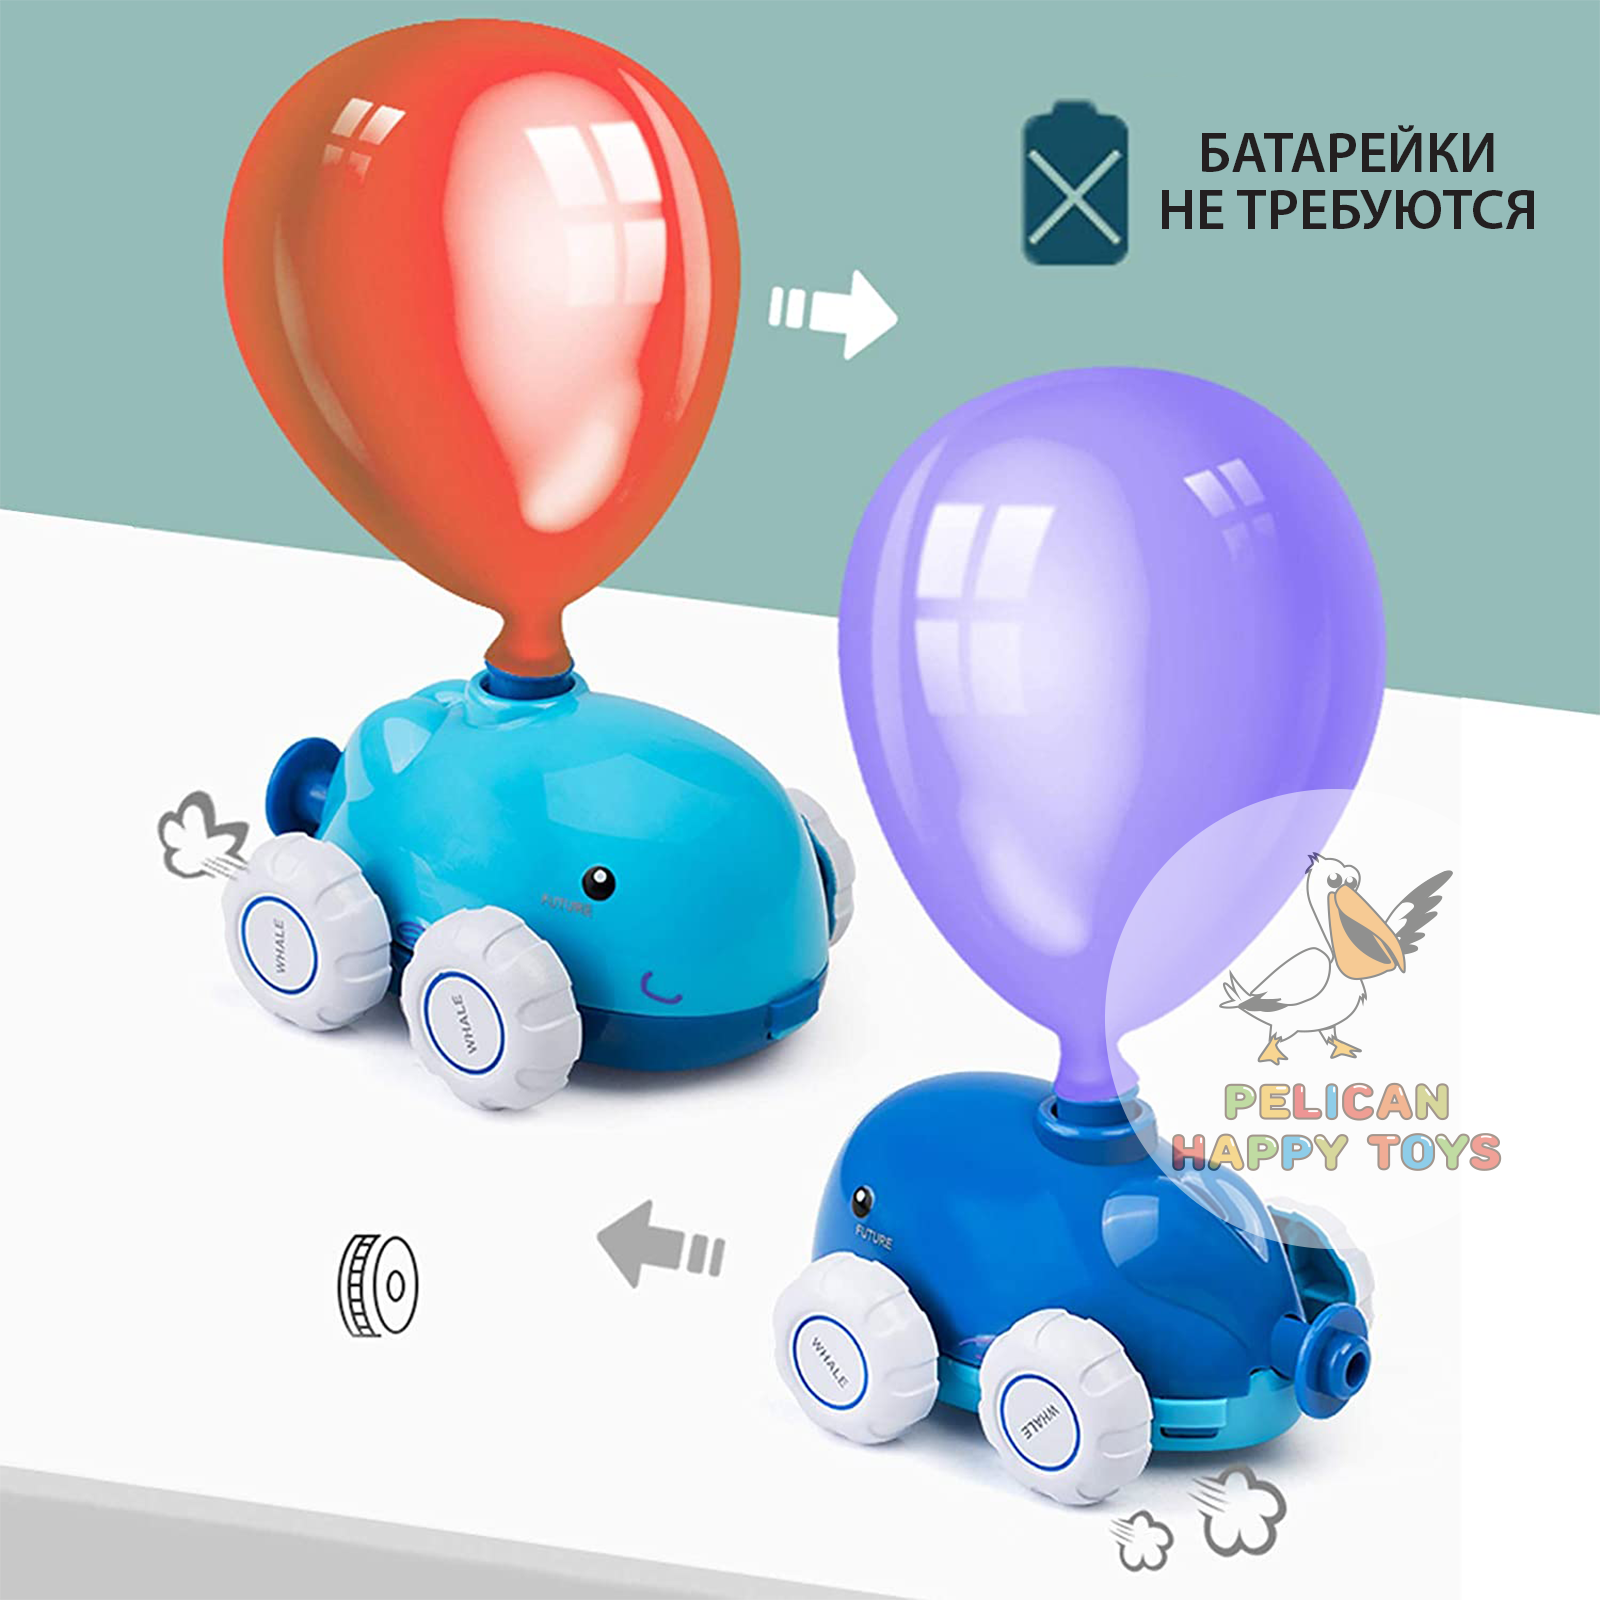 Игровой набор транспорт PELICAN HAPPY TOYS машинки с воздушными шариками для детей - фото 9